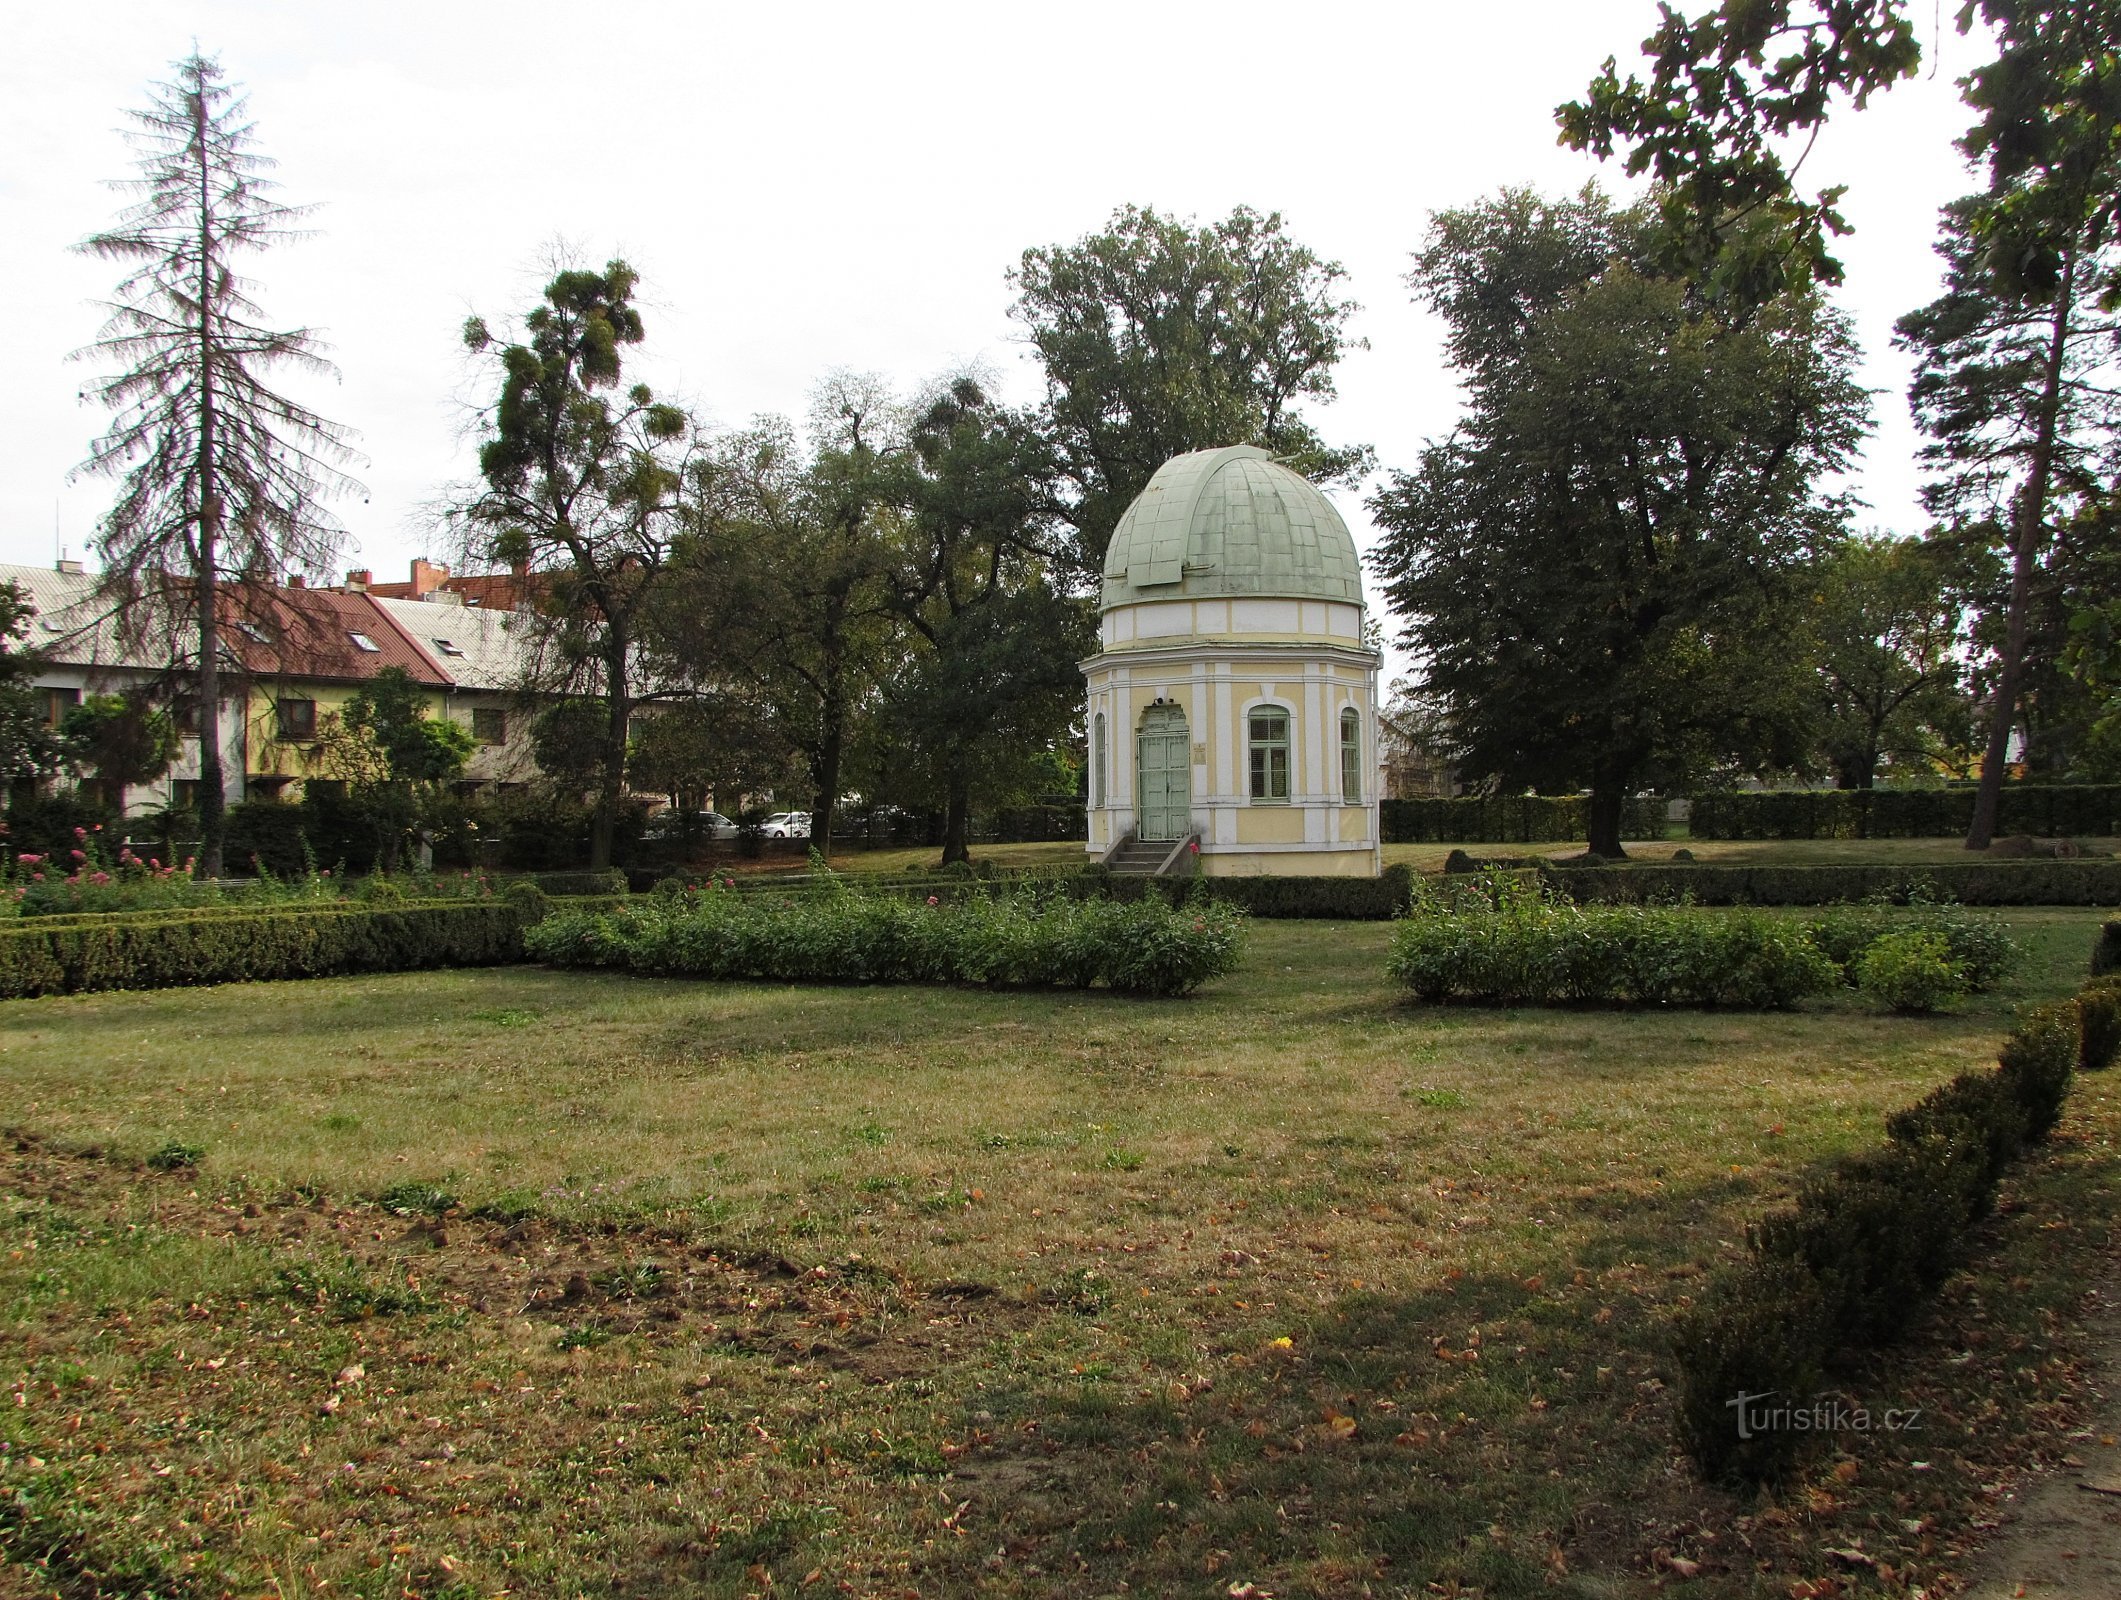 ホレショフ - 作曲家と天文台の記念碑